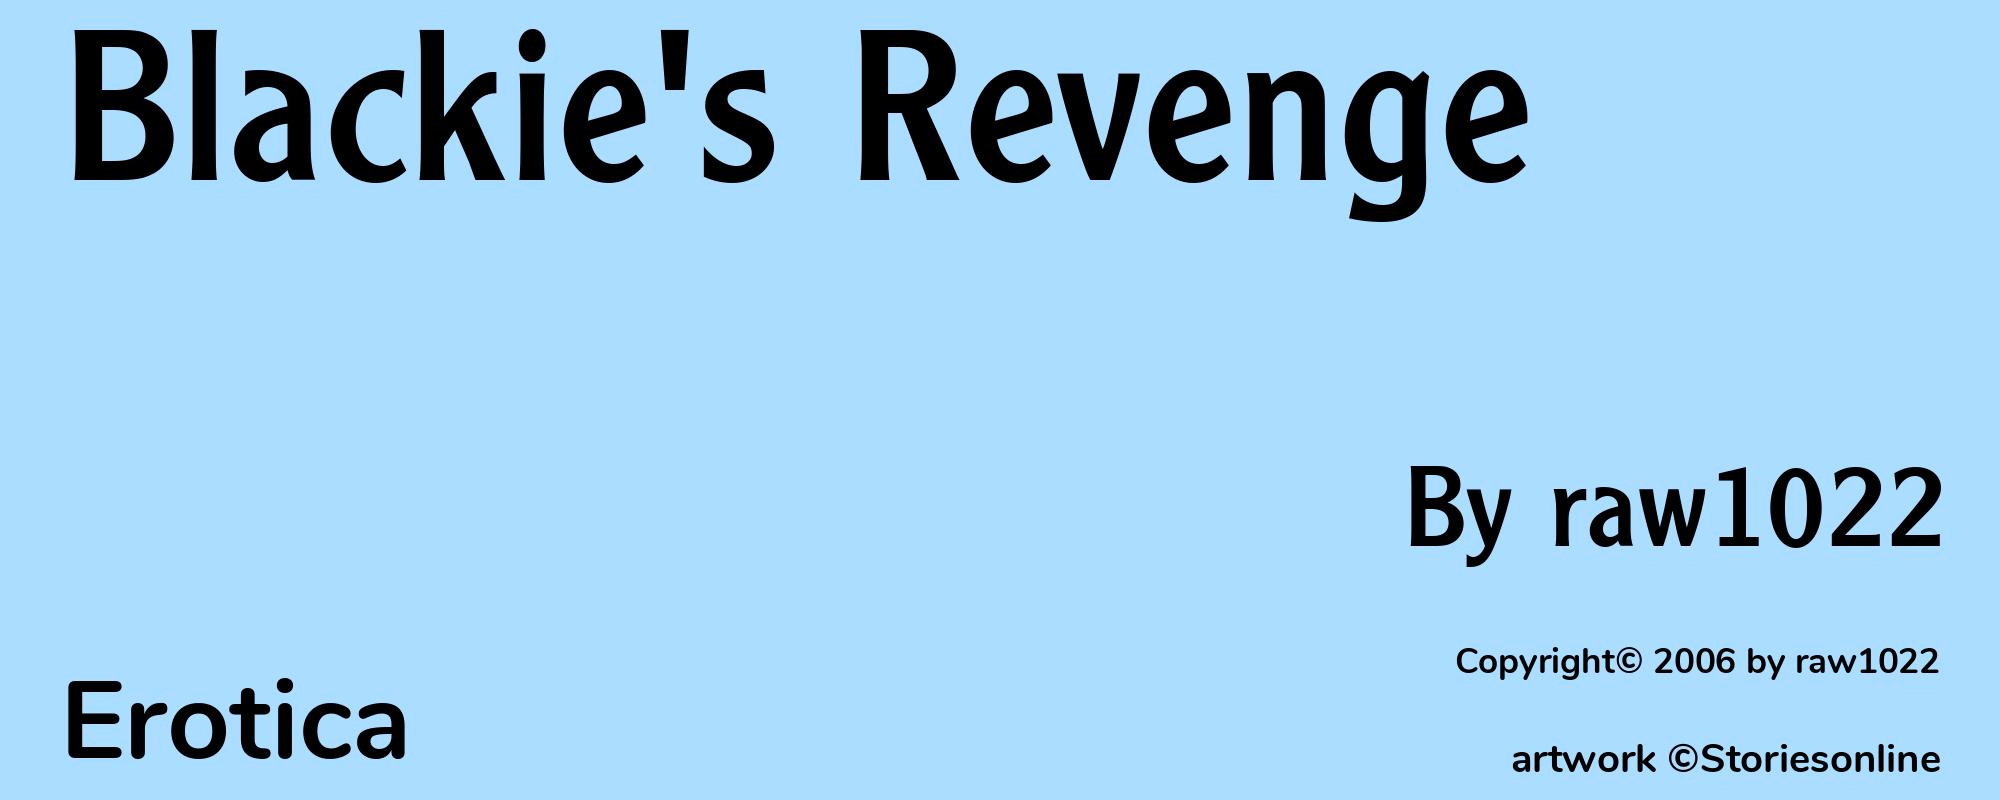 Blackie's Revenge - Cover